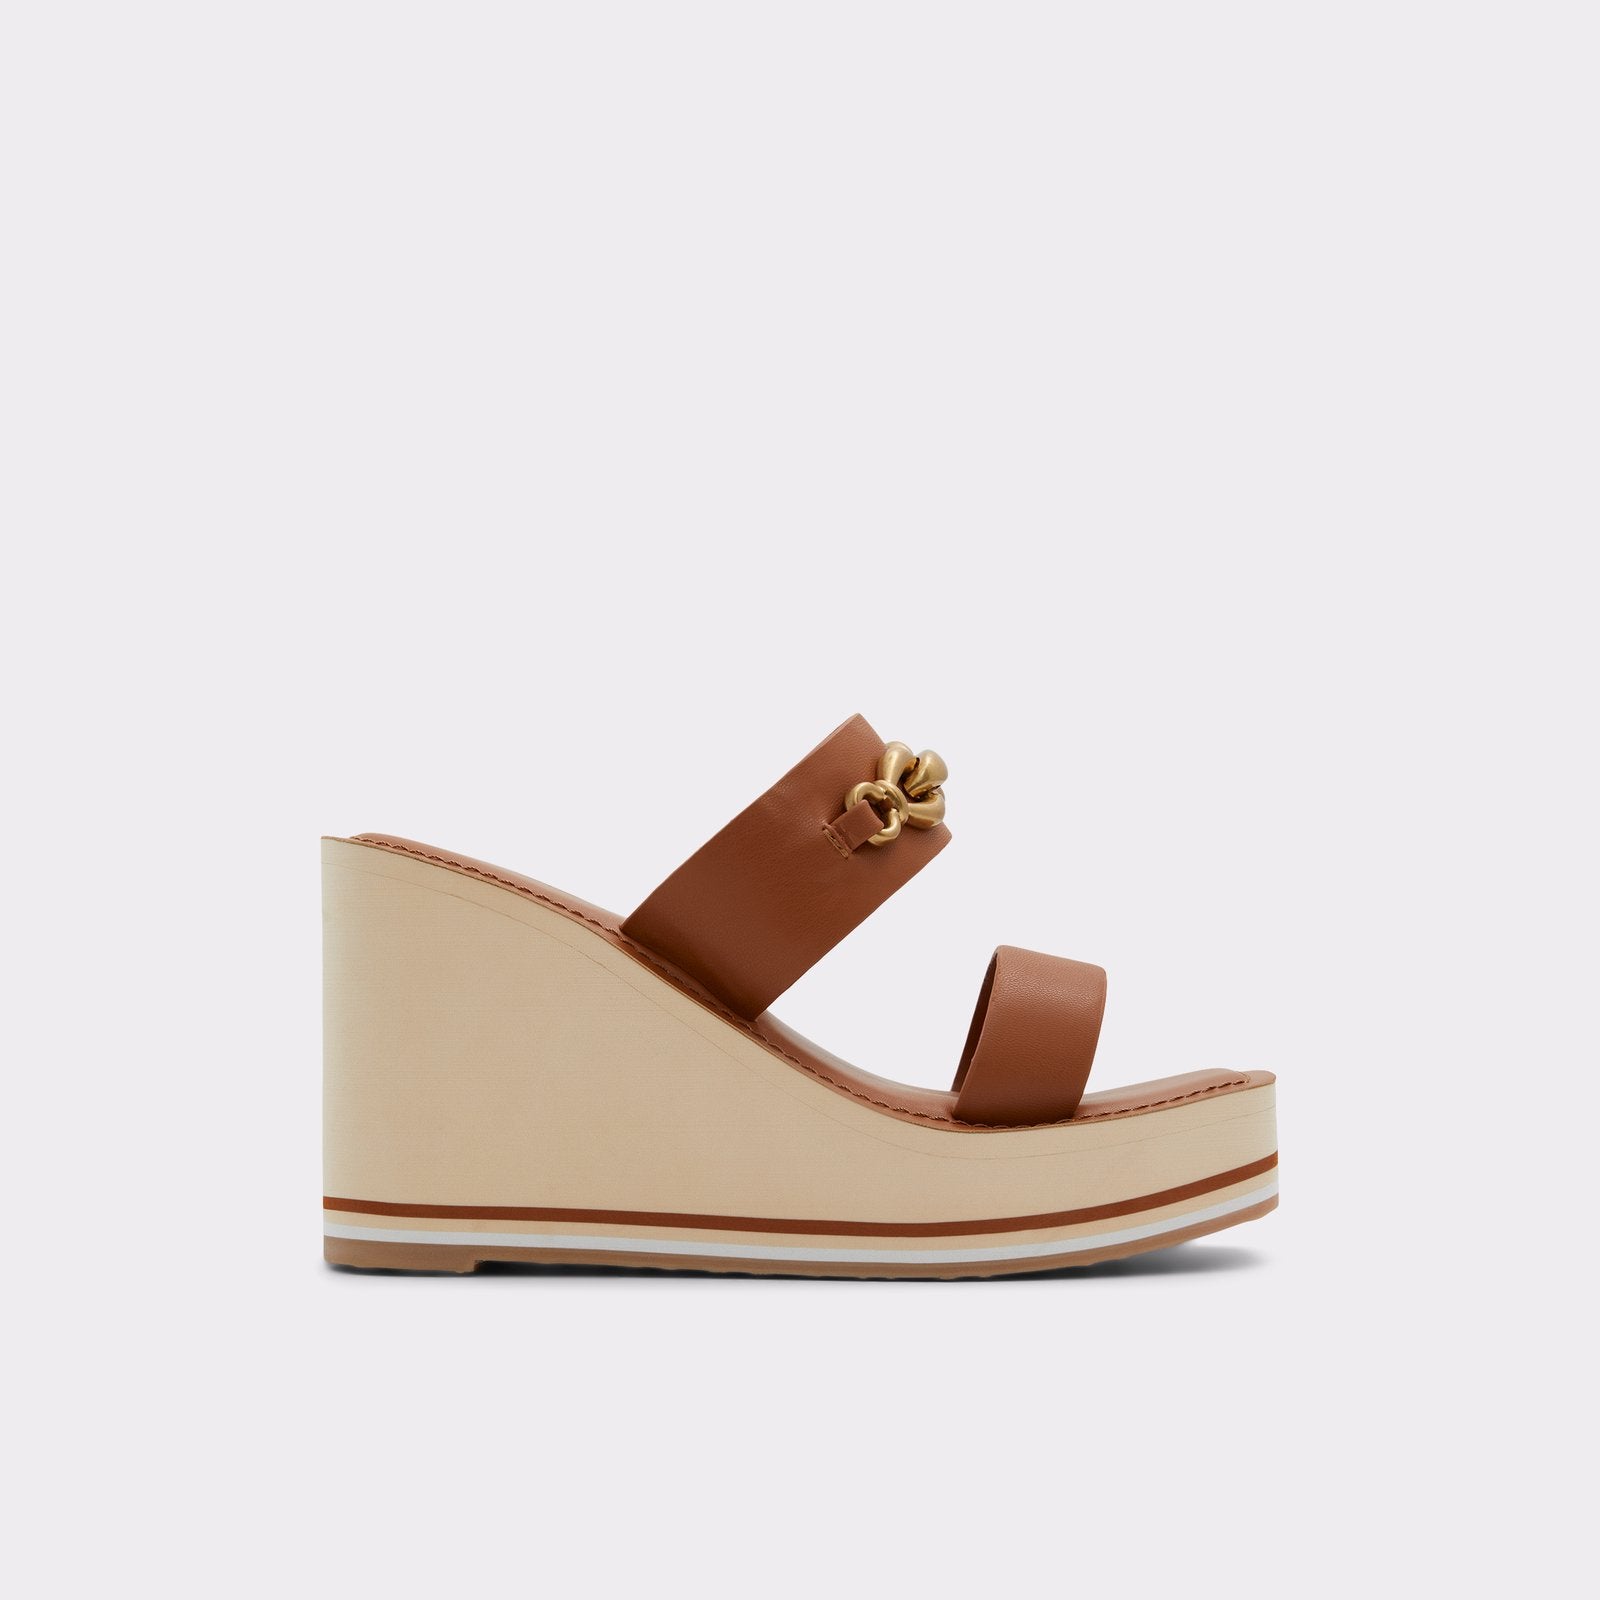 Lavista Women Shoes - Medium Brown - ALDO KSA